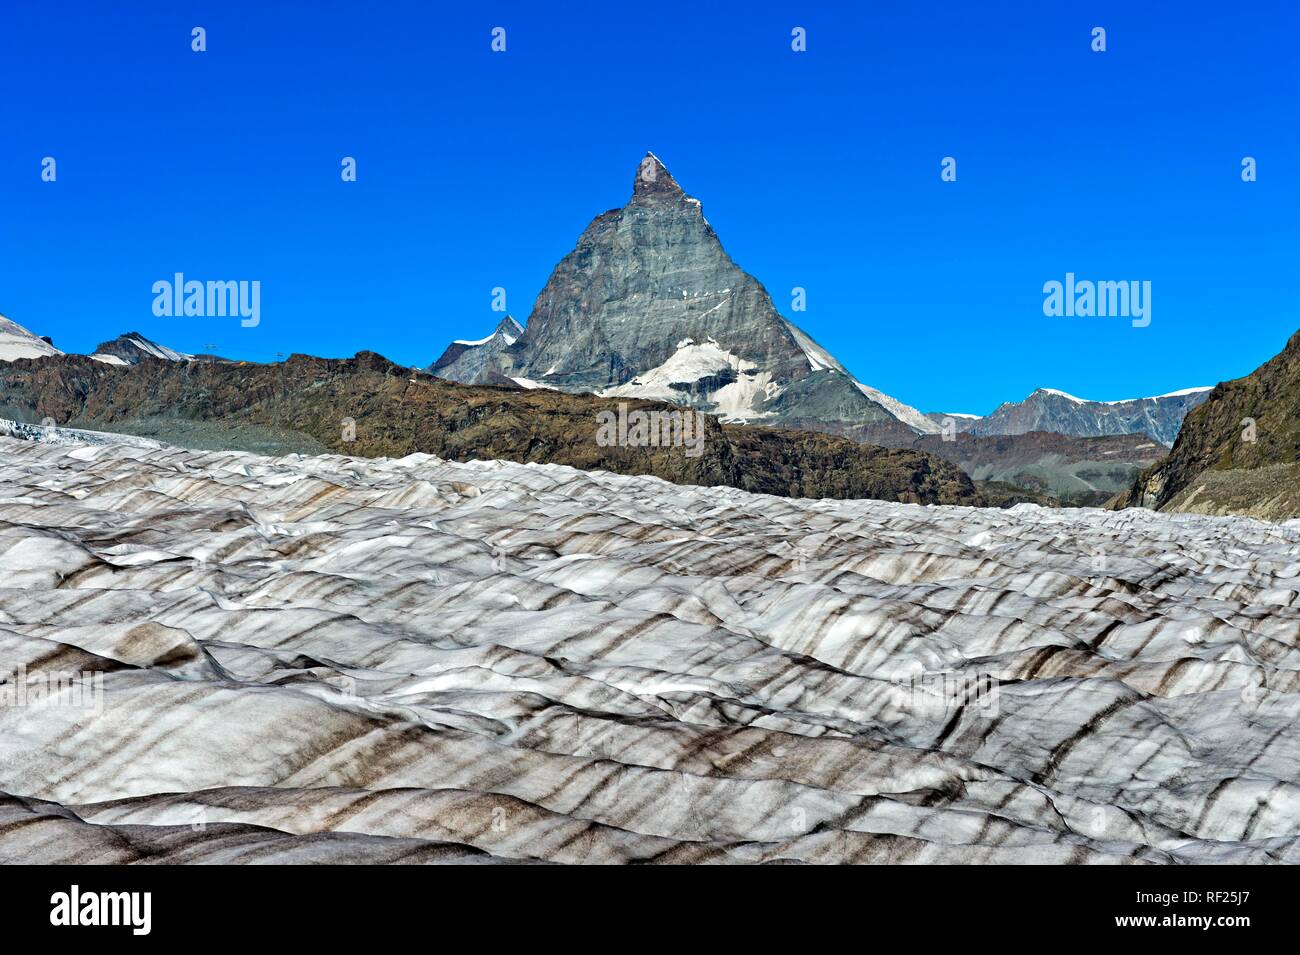 Icefield of the Gorner glacier with view of the Matterhorn, Zermatt, Valais, Switzerland Stock Photo